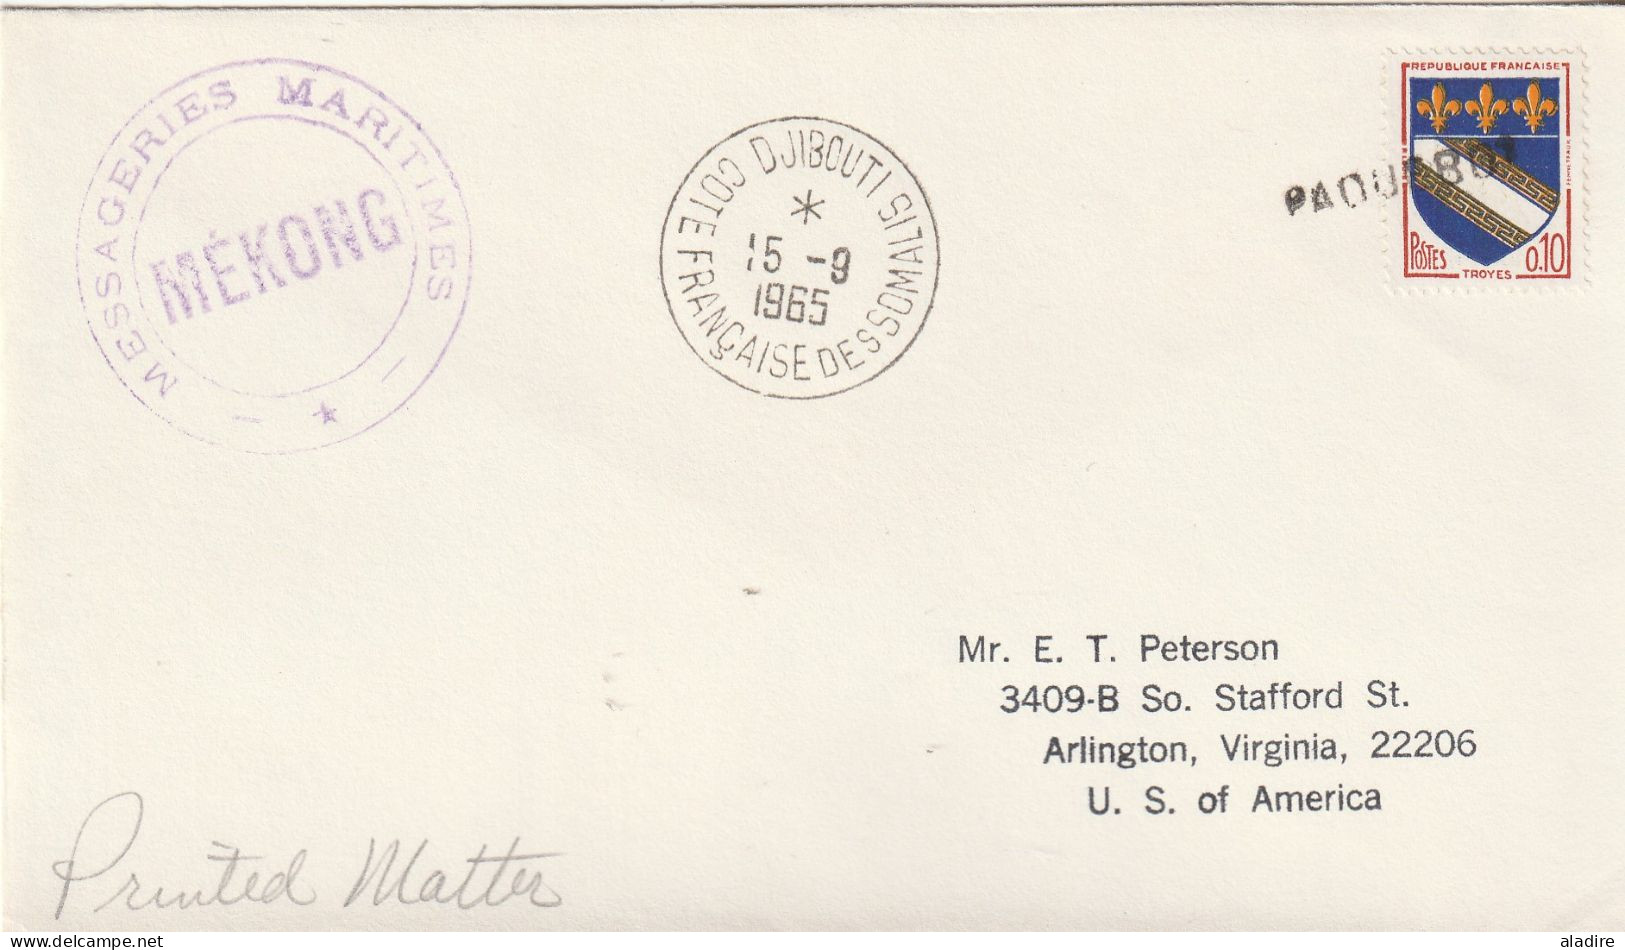 1952 /1965 - collection de 22 enveloppes PAQUEBOT - France diverses destinations